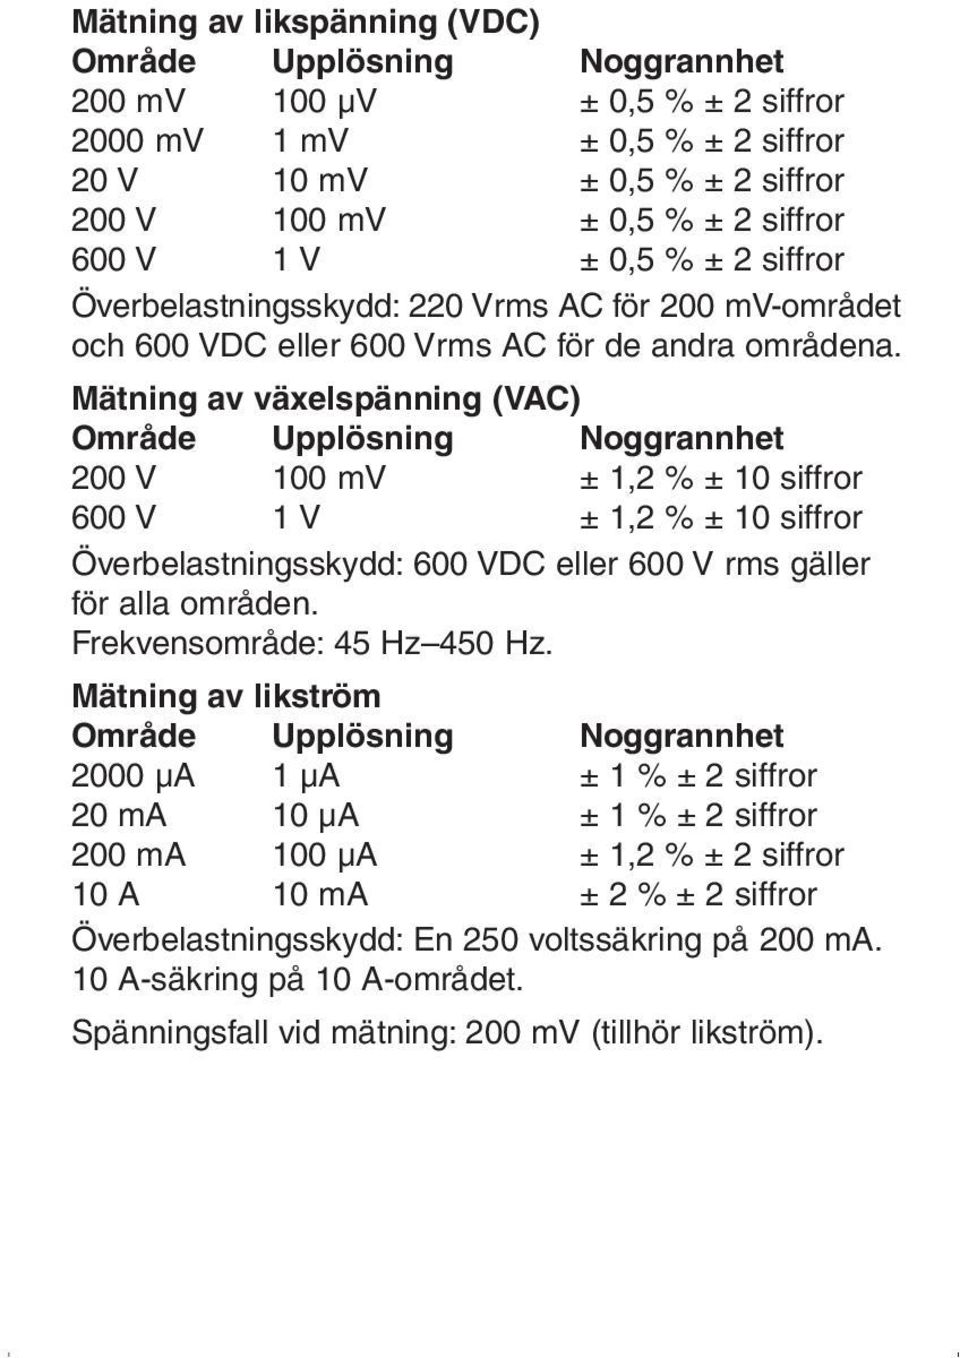 Mätning av växelspänning (VAC) Område Upplösning Noggrannhet 200 V 100 mv ± 1,2 % ± 10 siffror 600 V 1 V ± 1,2 % ± 10 siffror Överbelastningsskydd: 600 VDC eller 600 V rms gäller för alla områden.